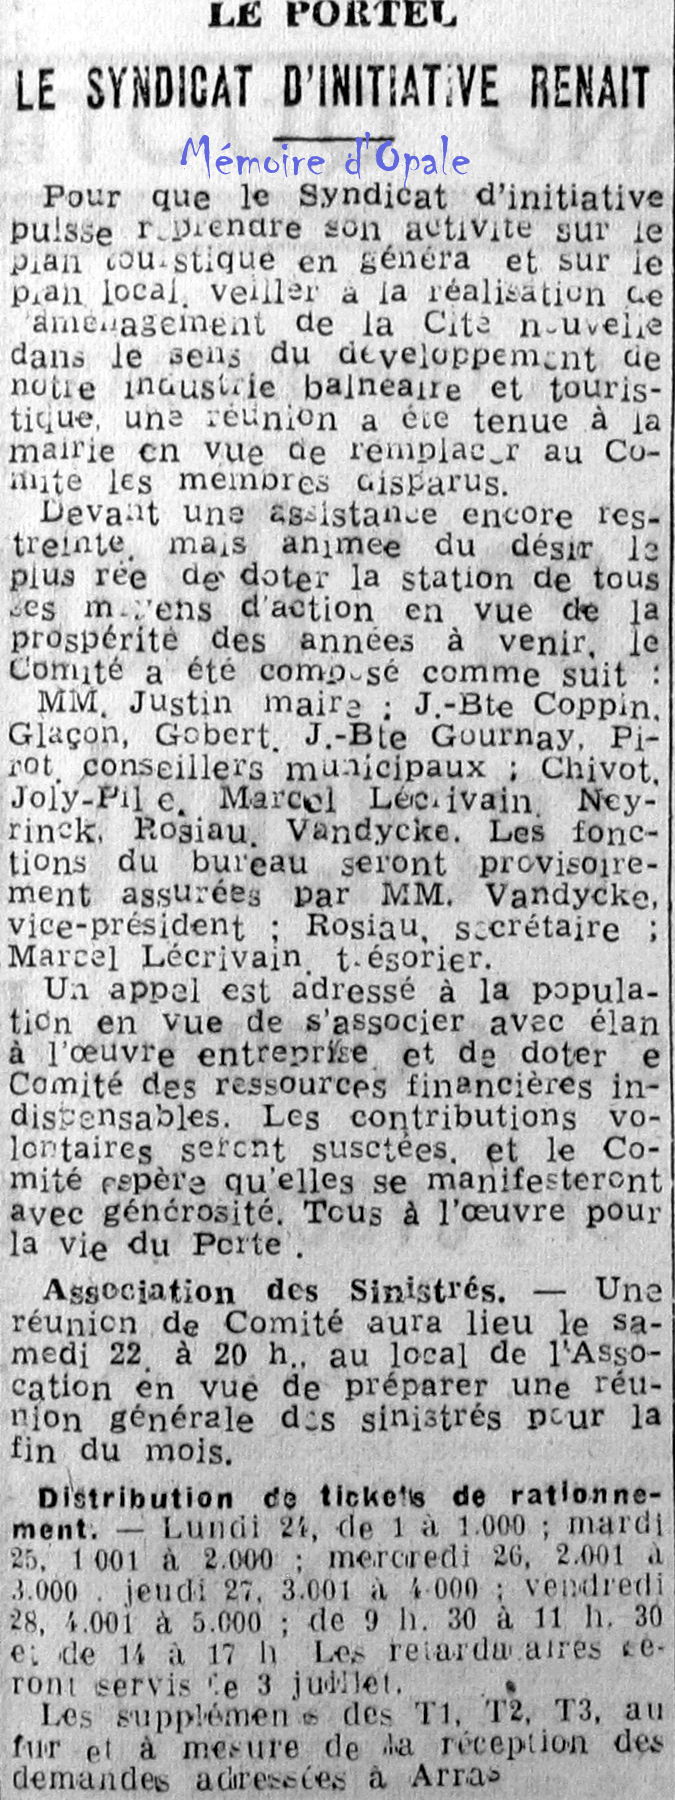 La Voix du Nord – 1946 – Photos Alain ÉVRARD pour Mémoire d’Opale - Page 20 La_v1014